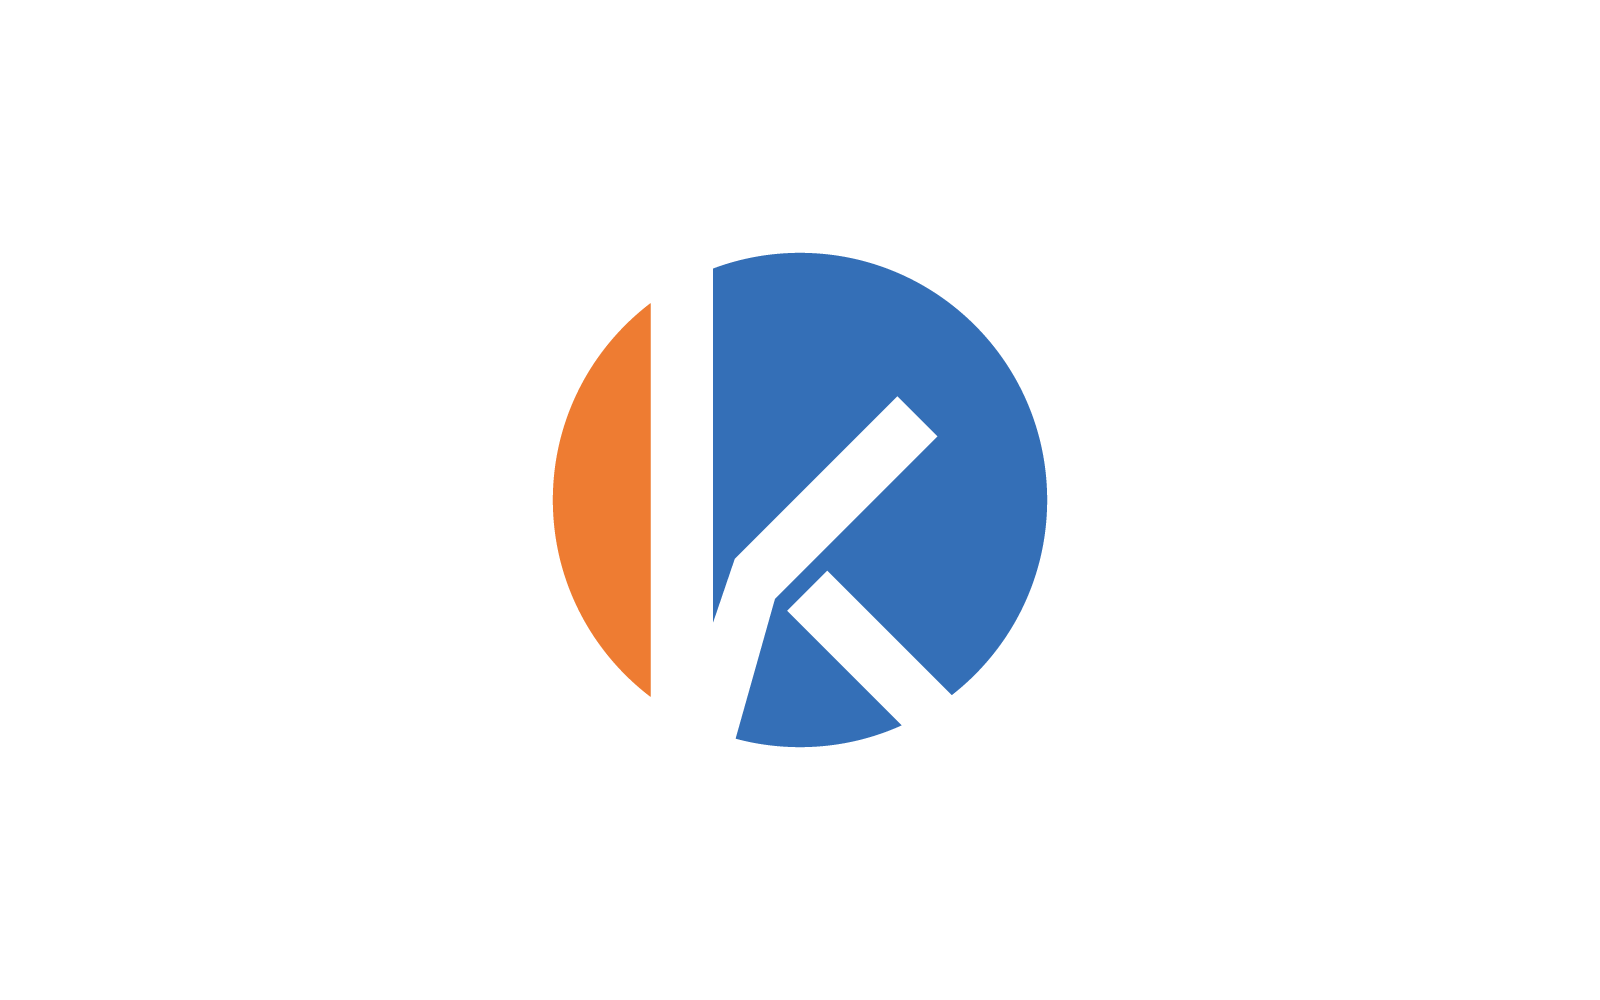 Vorlage für Logo-Vektor mit flachem Design und Anfangsbuchstaben K